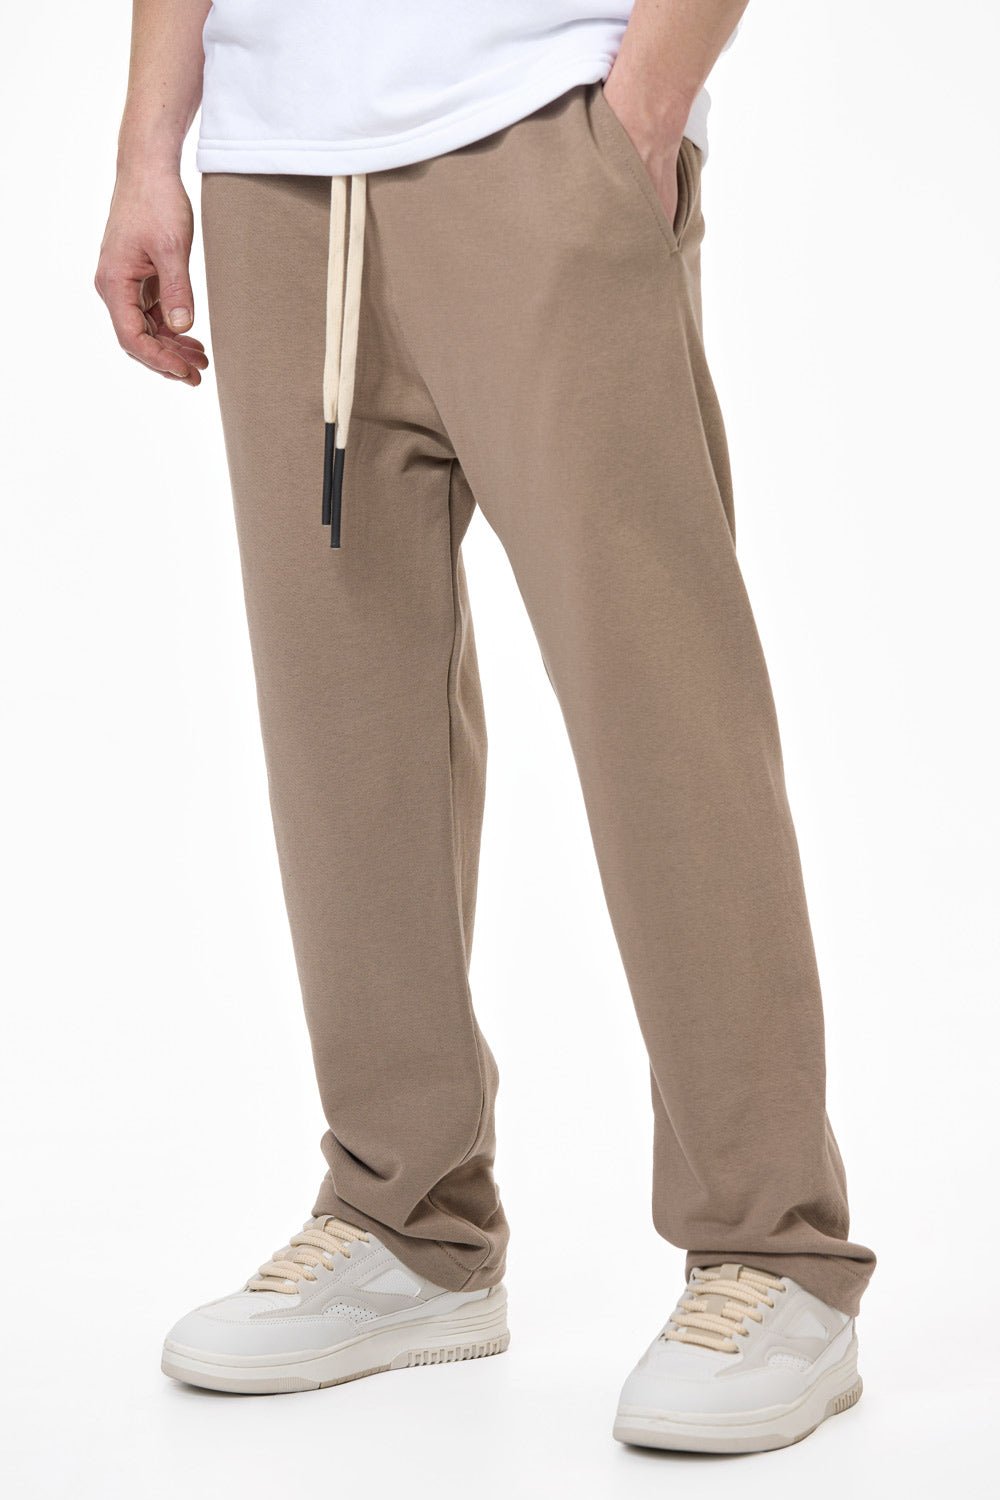 Pantaloni bărbați, bej, bumbac premium, croială dreaptă oversized, detalii practice (talie reglabilă, buzunare frontale).